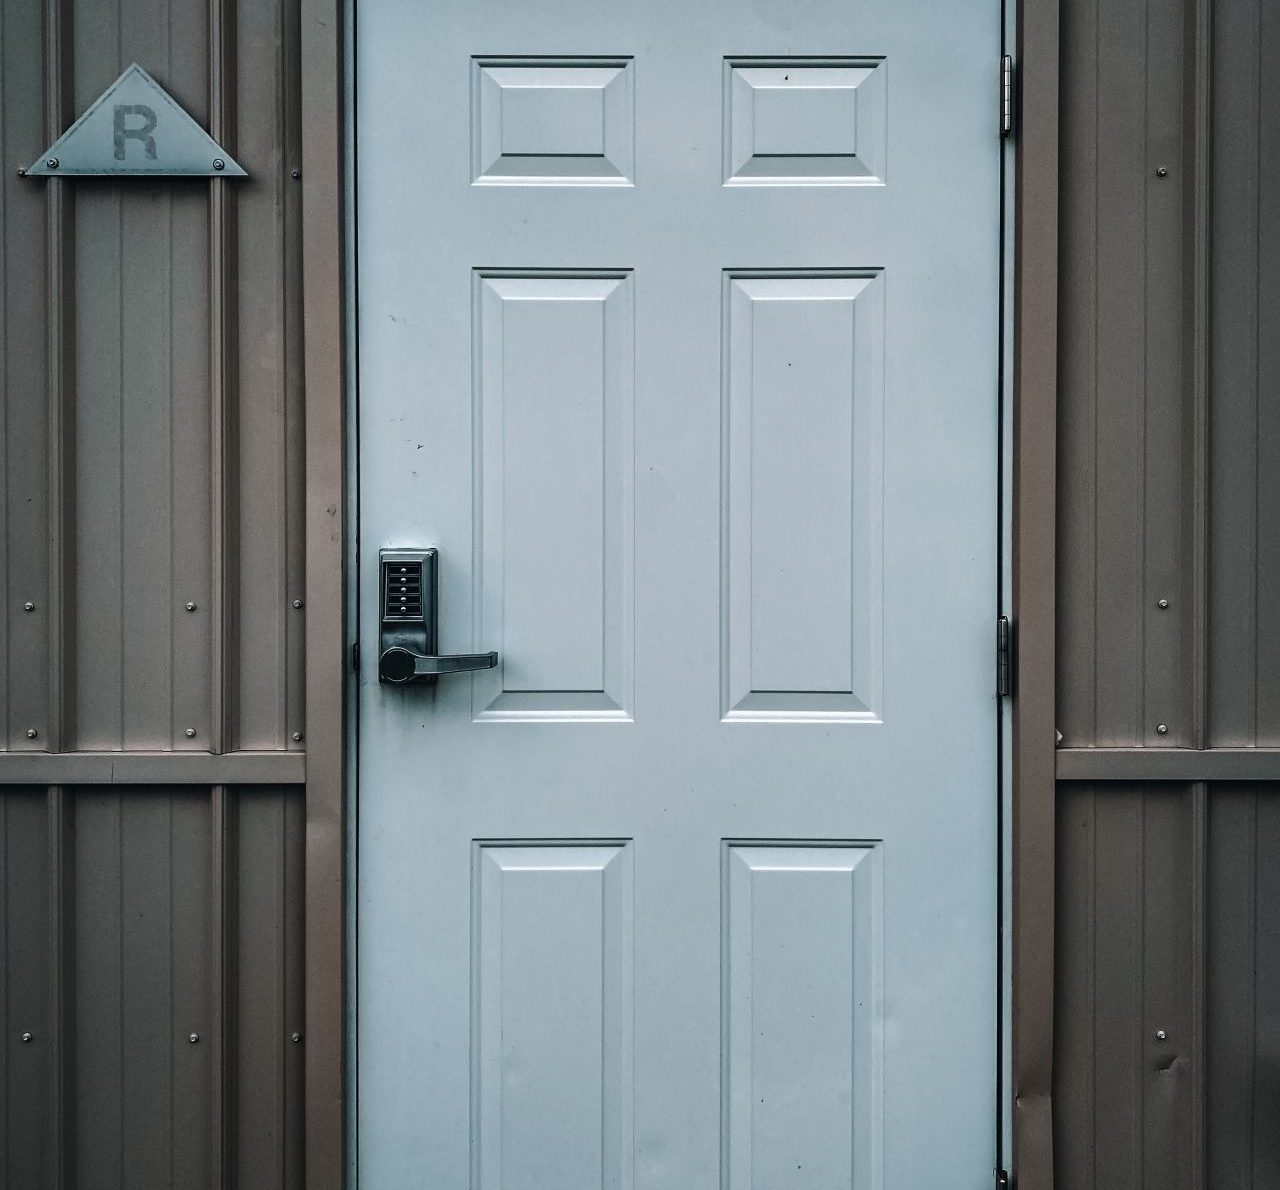 Czym się kierować przy wyborze drzwi zewnętrznych do naszego domu?